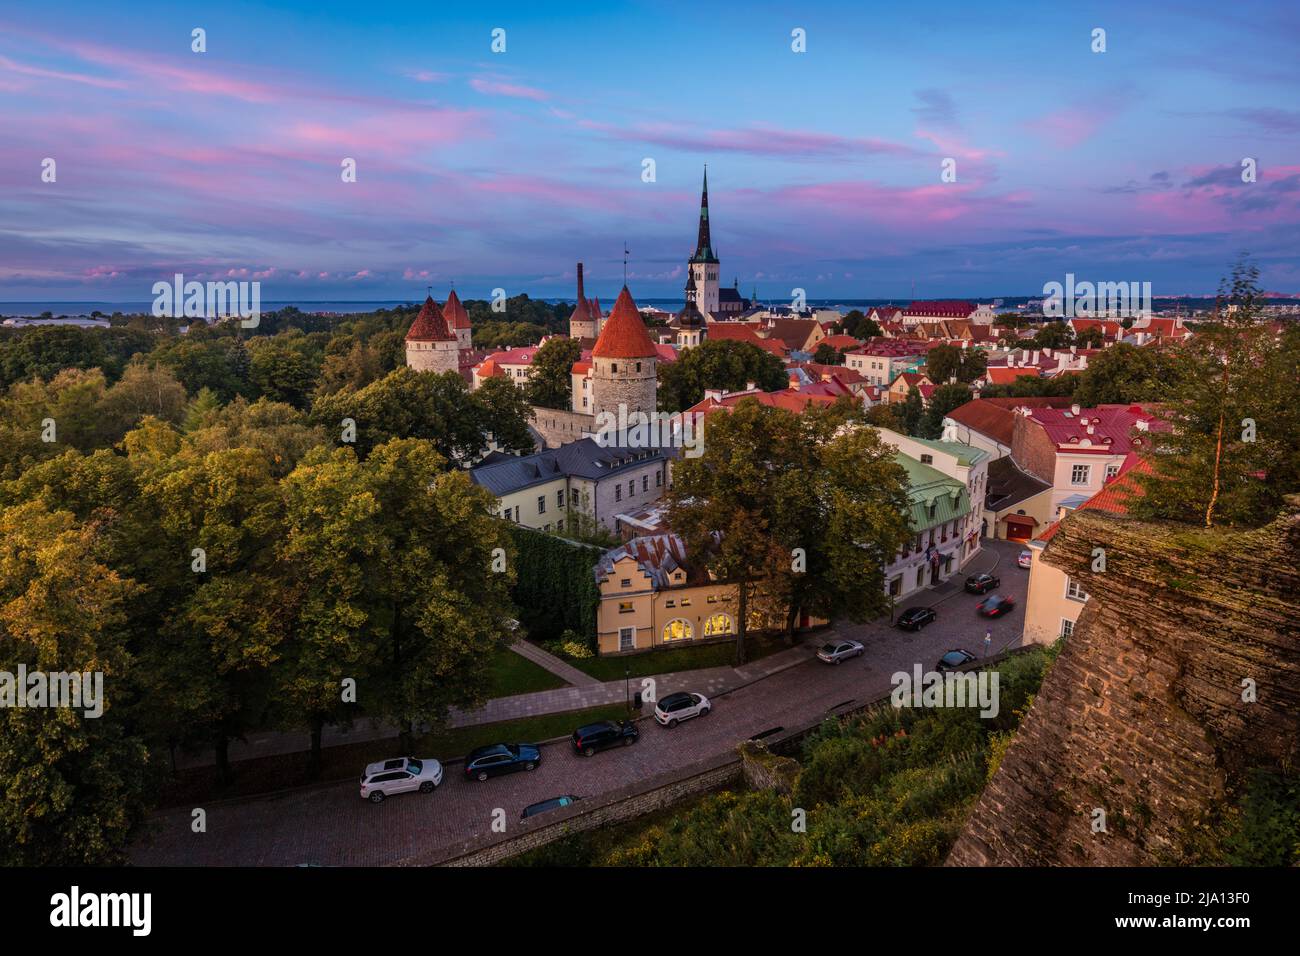 Vue sur la vieille ville de Tallinn, Estonie pendant un coucher de soleil coloré Banque D'Images